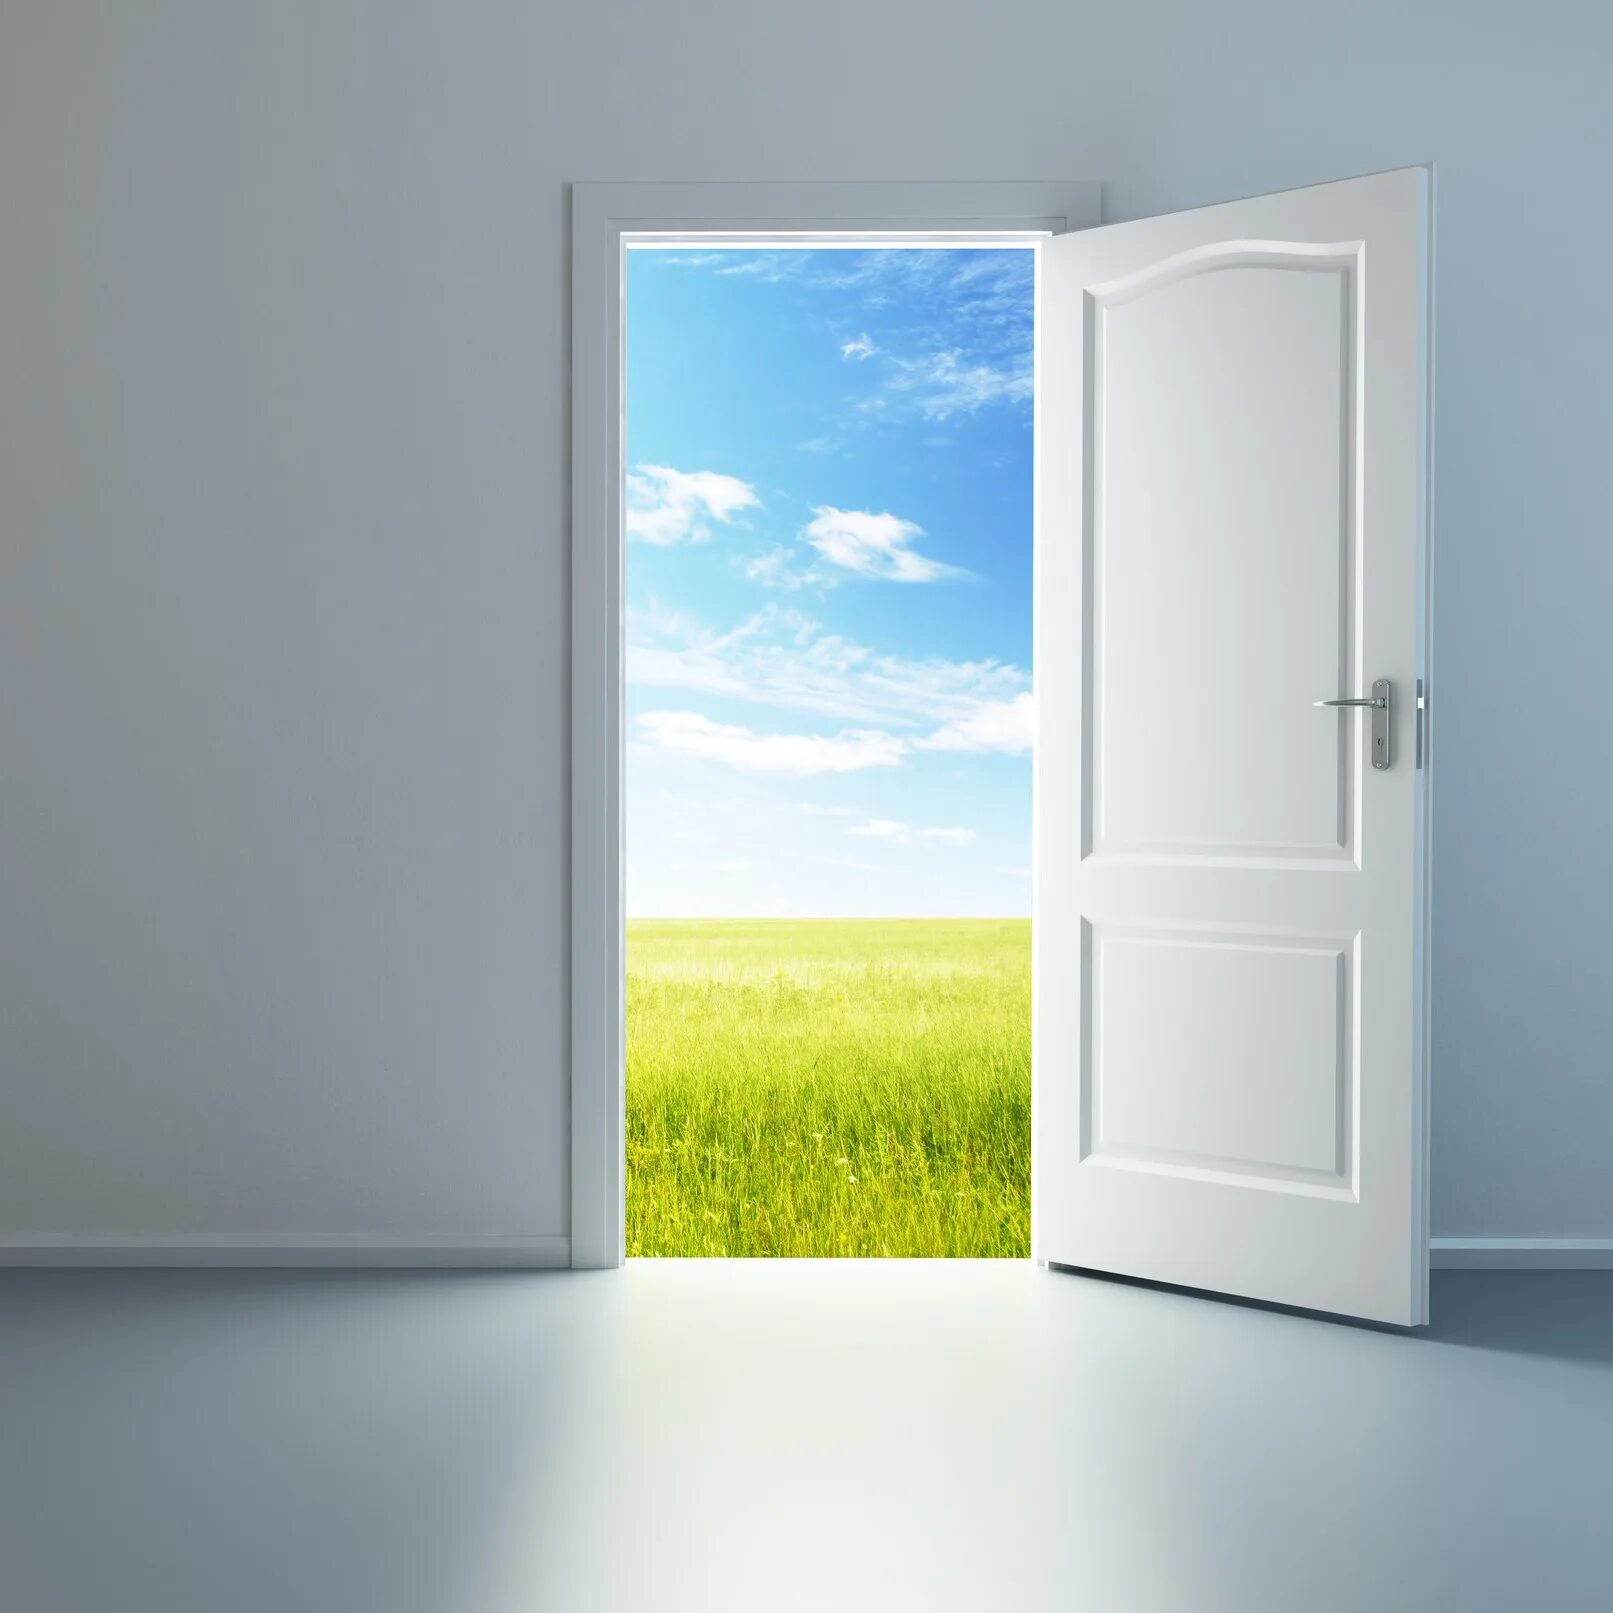 Открой дверь продолжи. Открытая дверь. Приоткрытая дверь. Дверь открыта. Двери в прекрасное будущее.